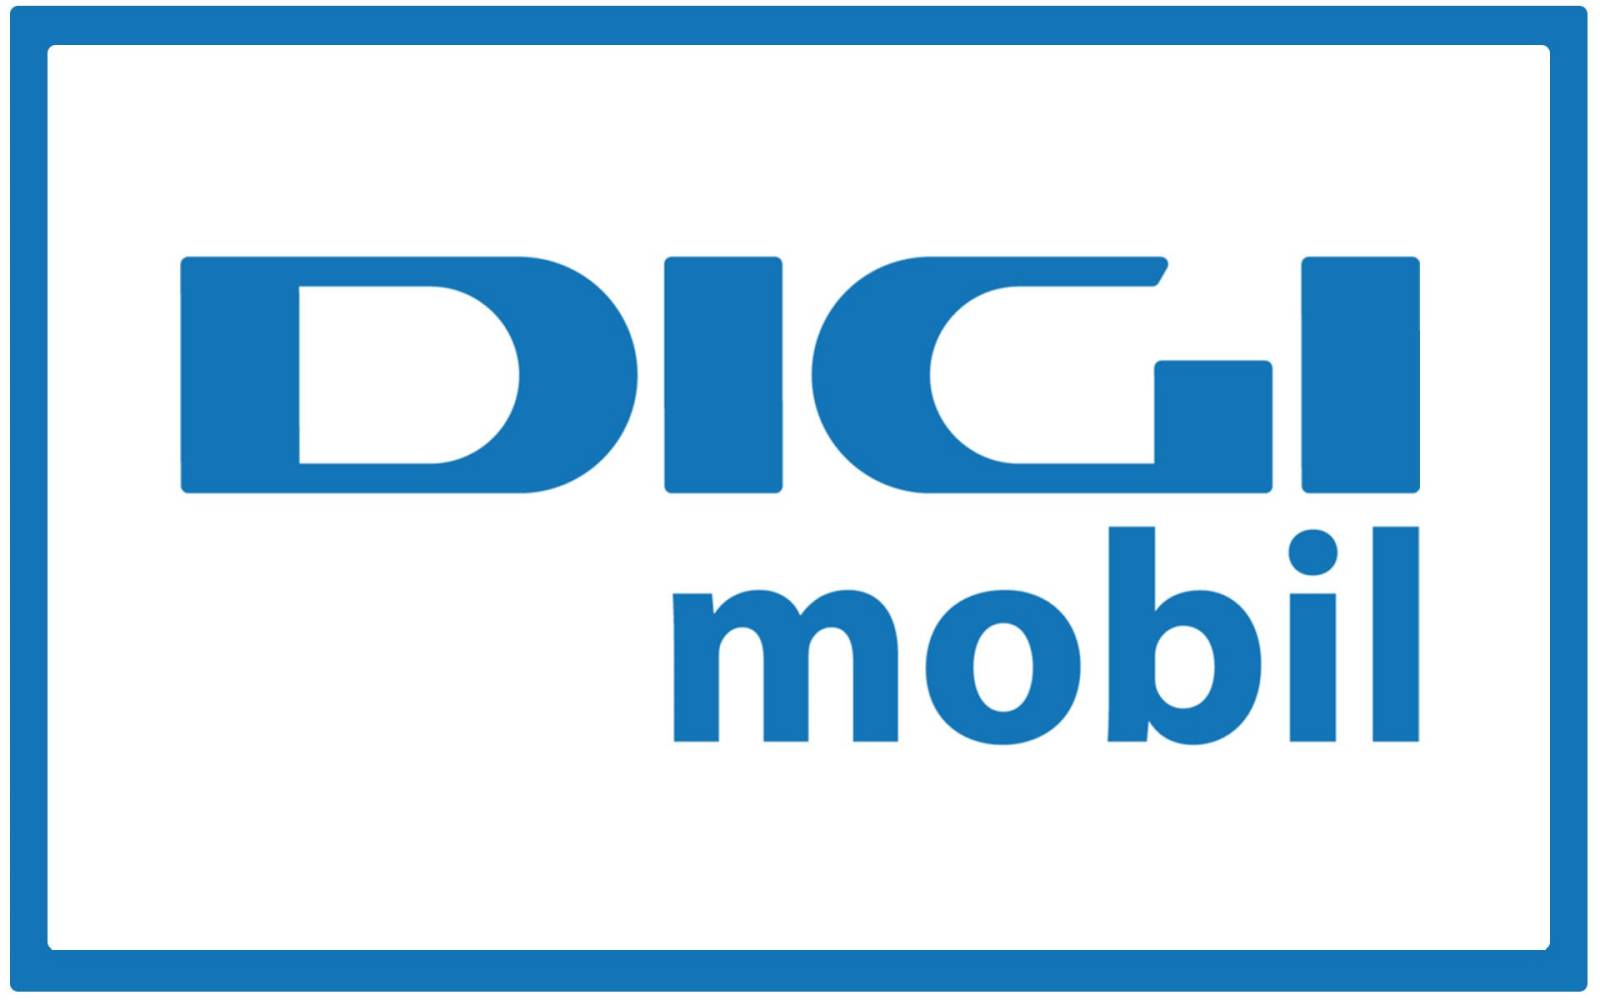 Digi Mobil besked til rumænske kunder